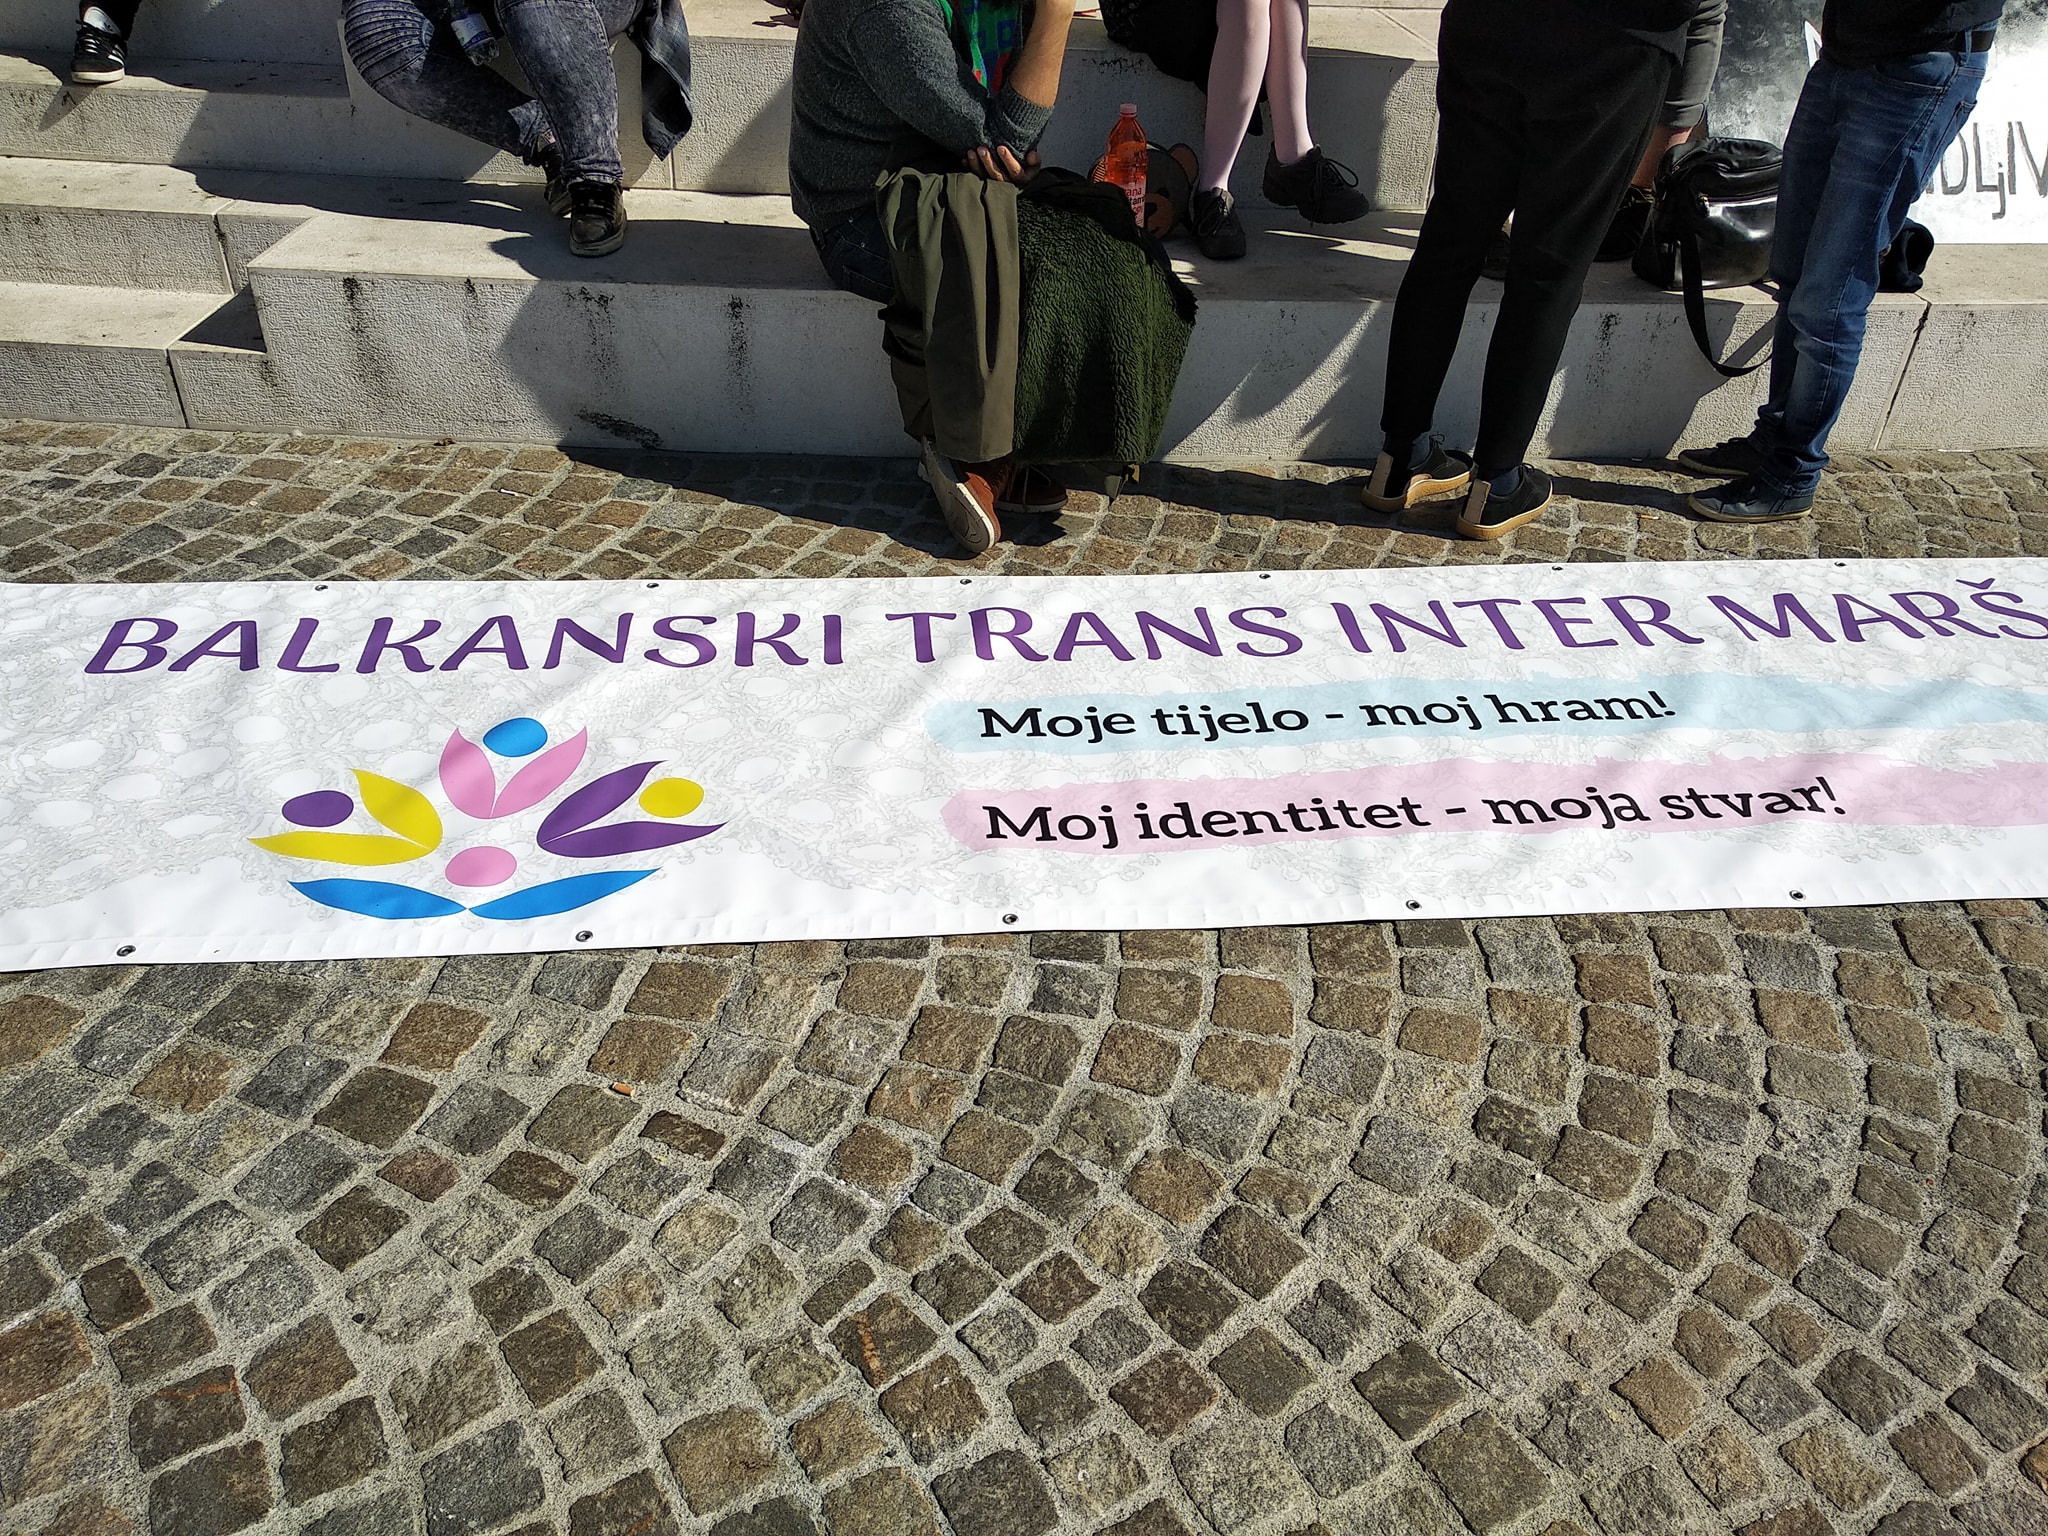 Участие в първия балкански транс и интерсекс Прайд